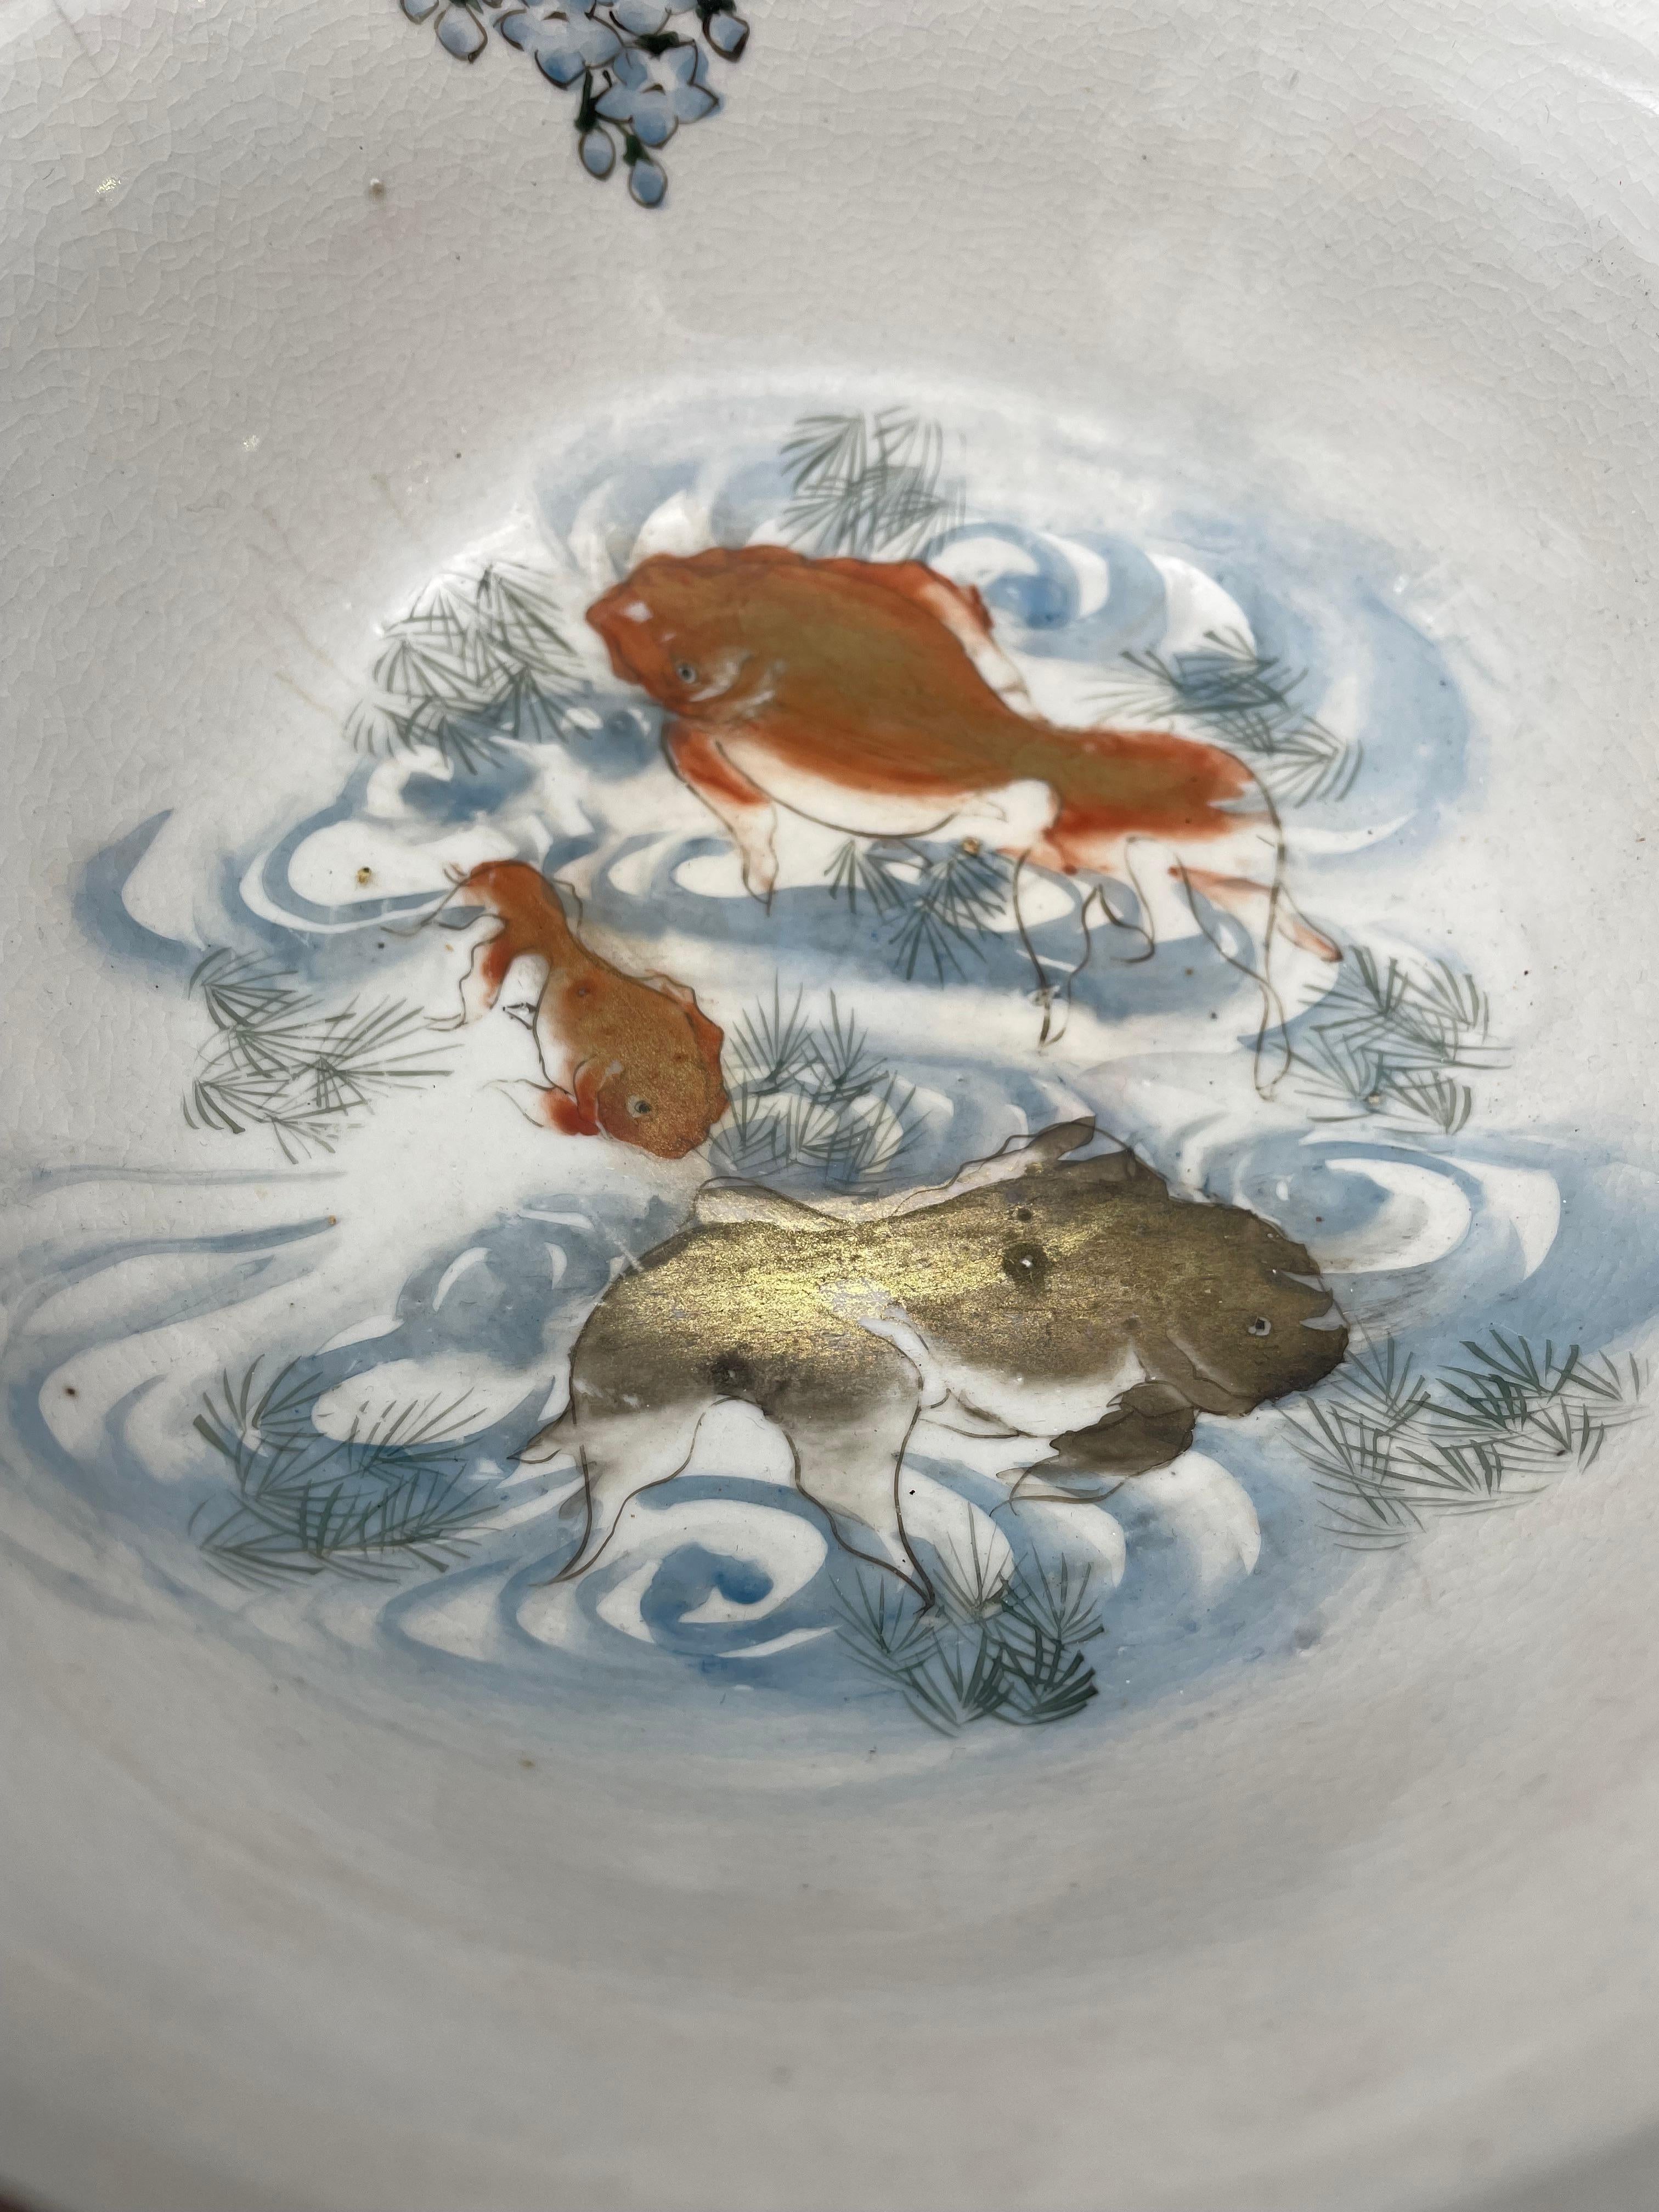 Early 20th Century Japanese Antique Bowl of Kutani-Yaki with Goldfish 1920s Taisho Era